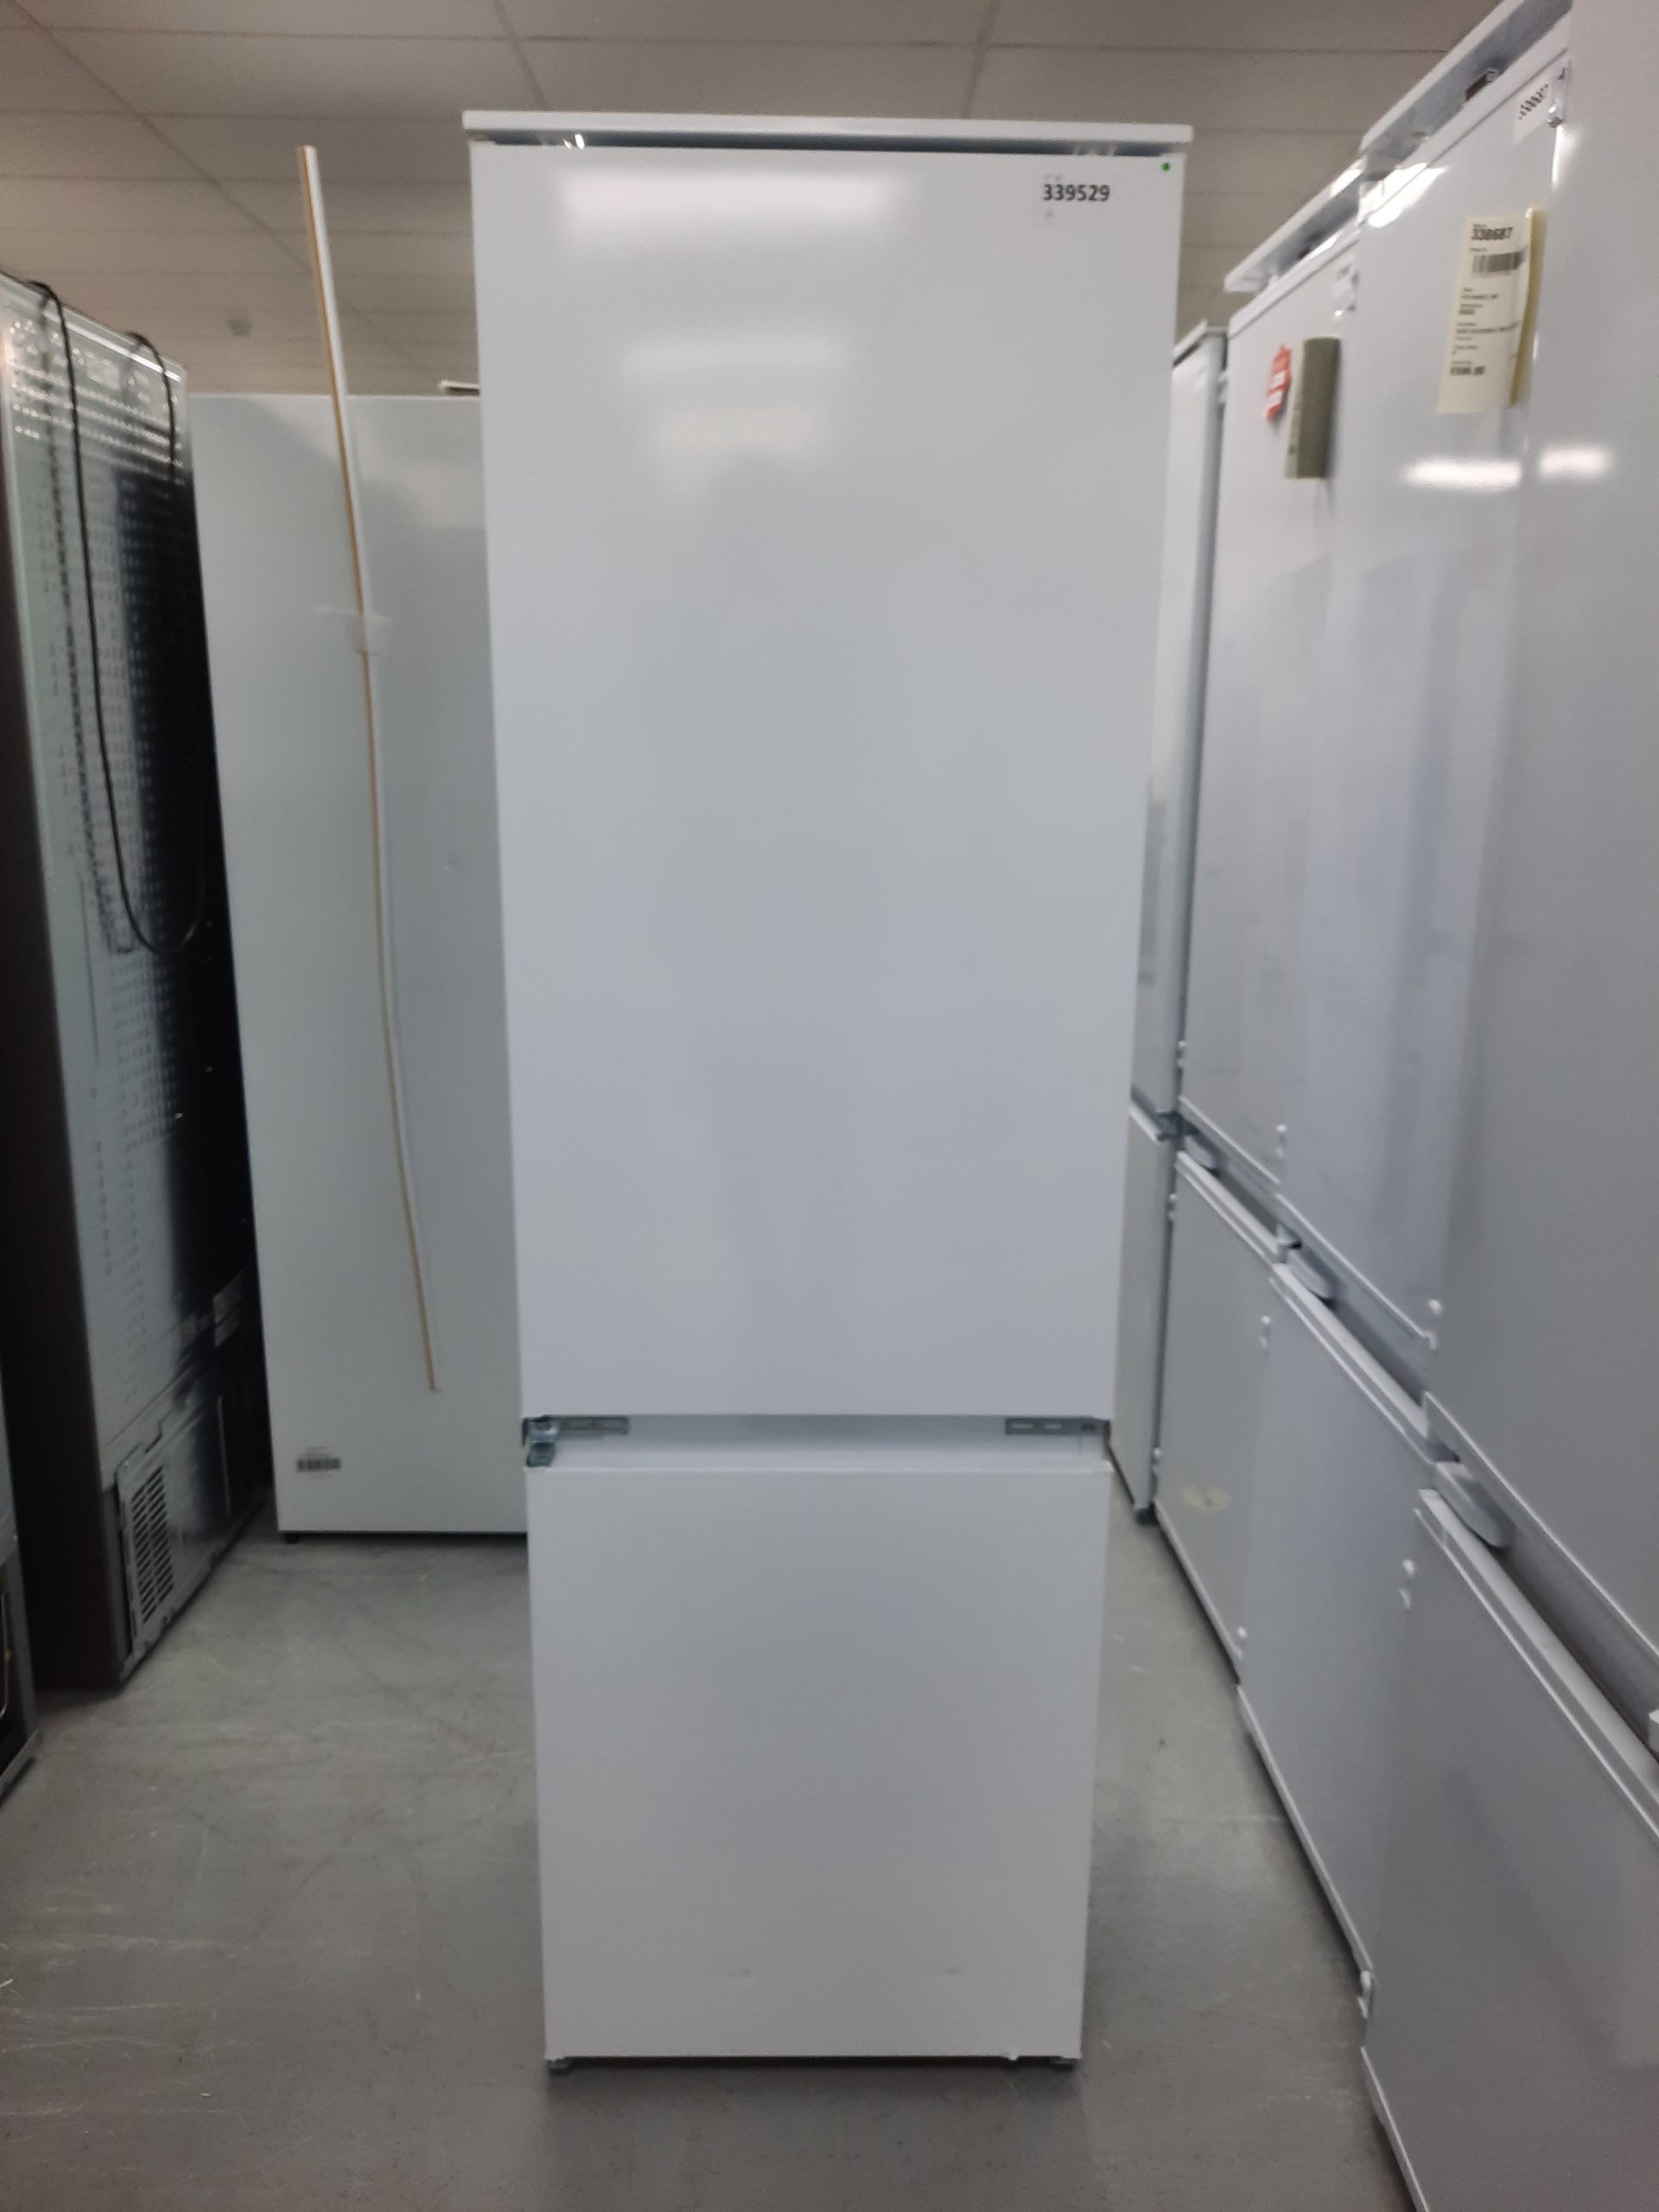 Zanussi ZNLN18FS1 Integrated 70/30 Fridge Freezer White - F Rated ...